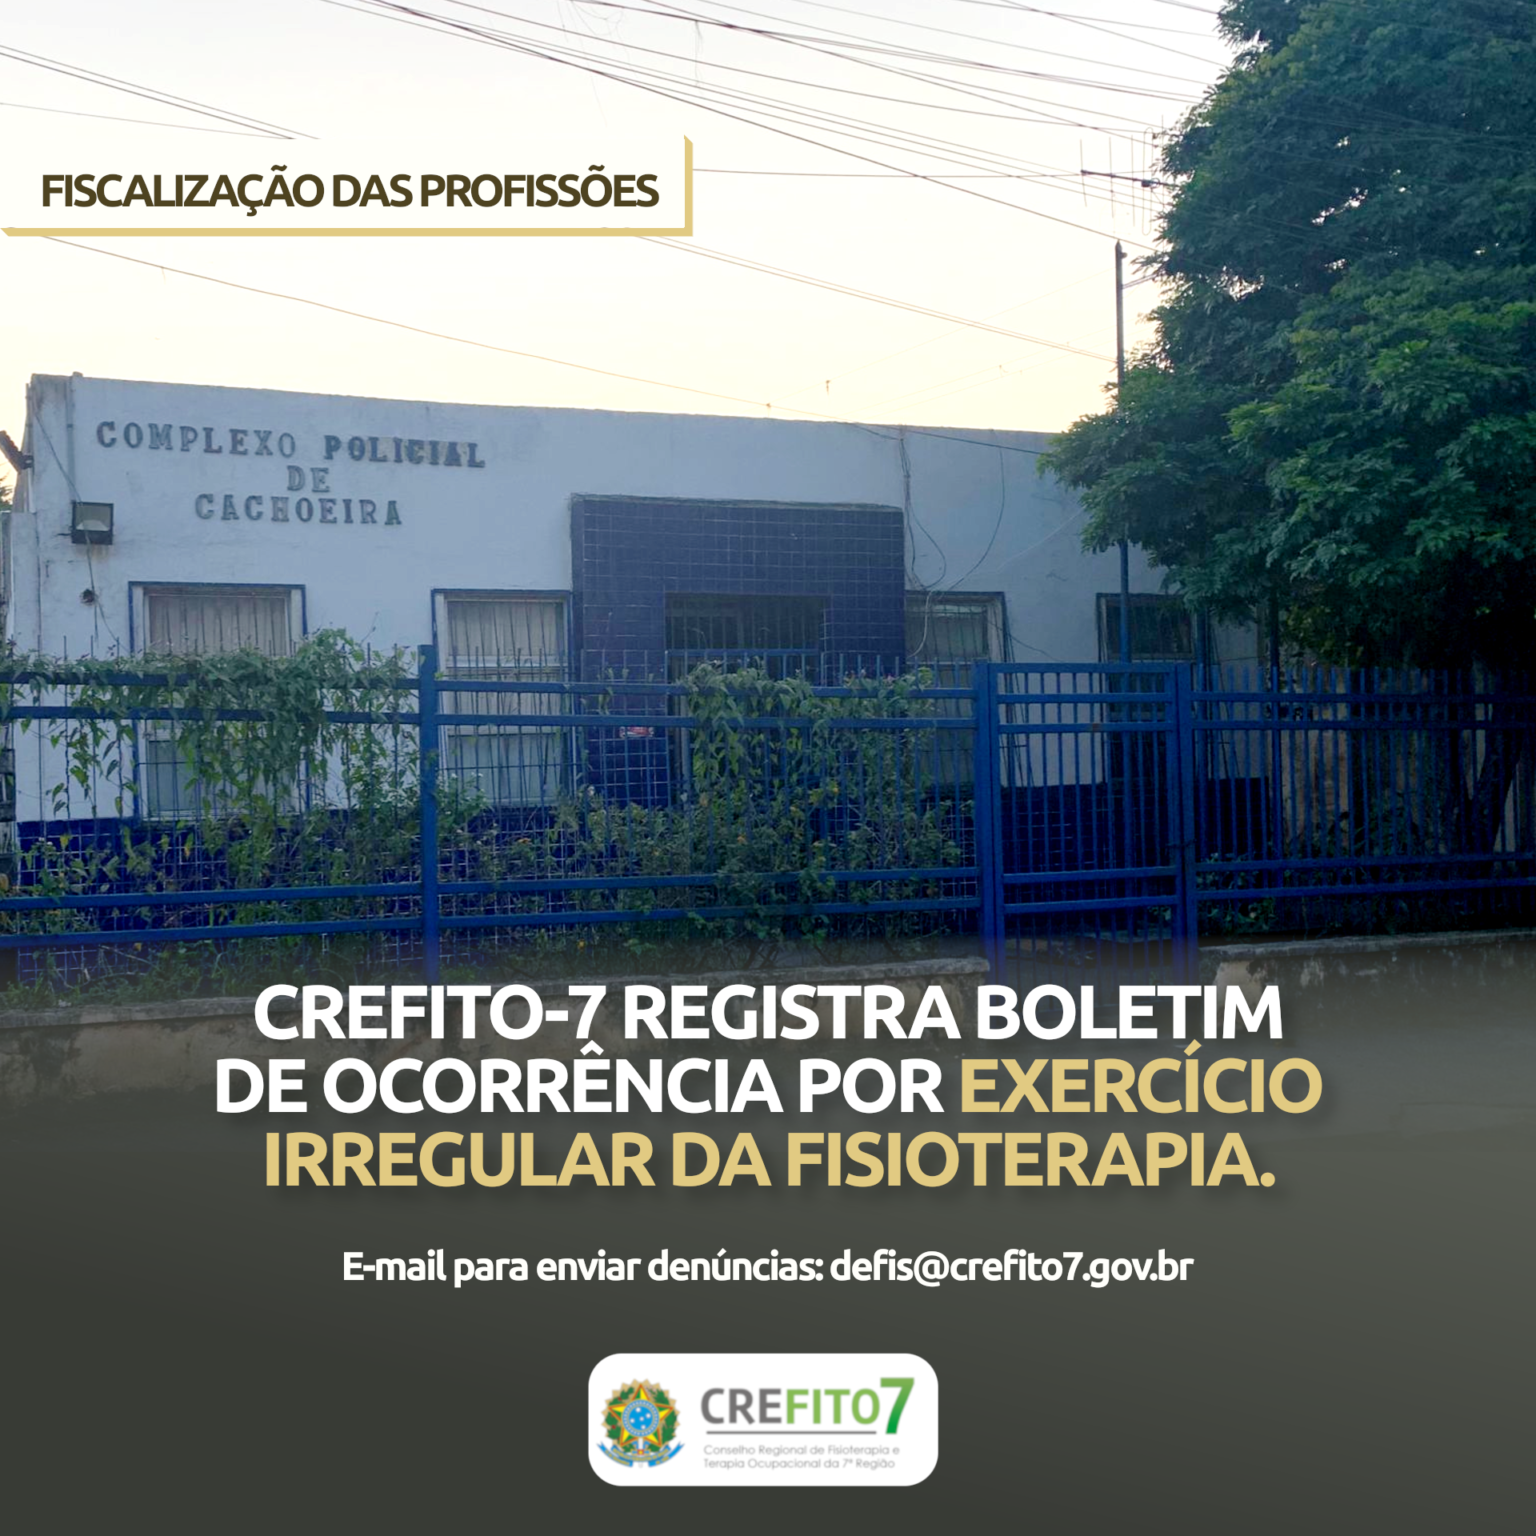 CREFITO-7 registra boletim de ocorrência por exercício irregular da Fisioterapia no município de Cachoeira/BA